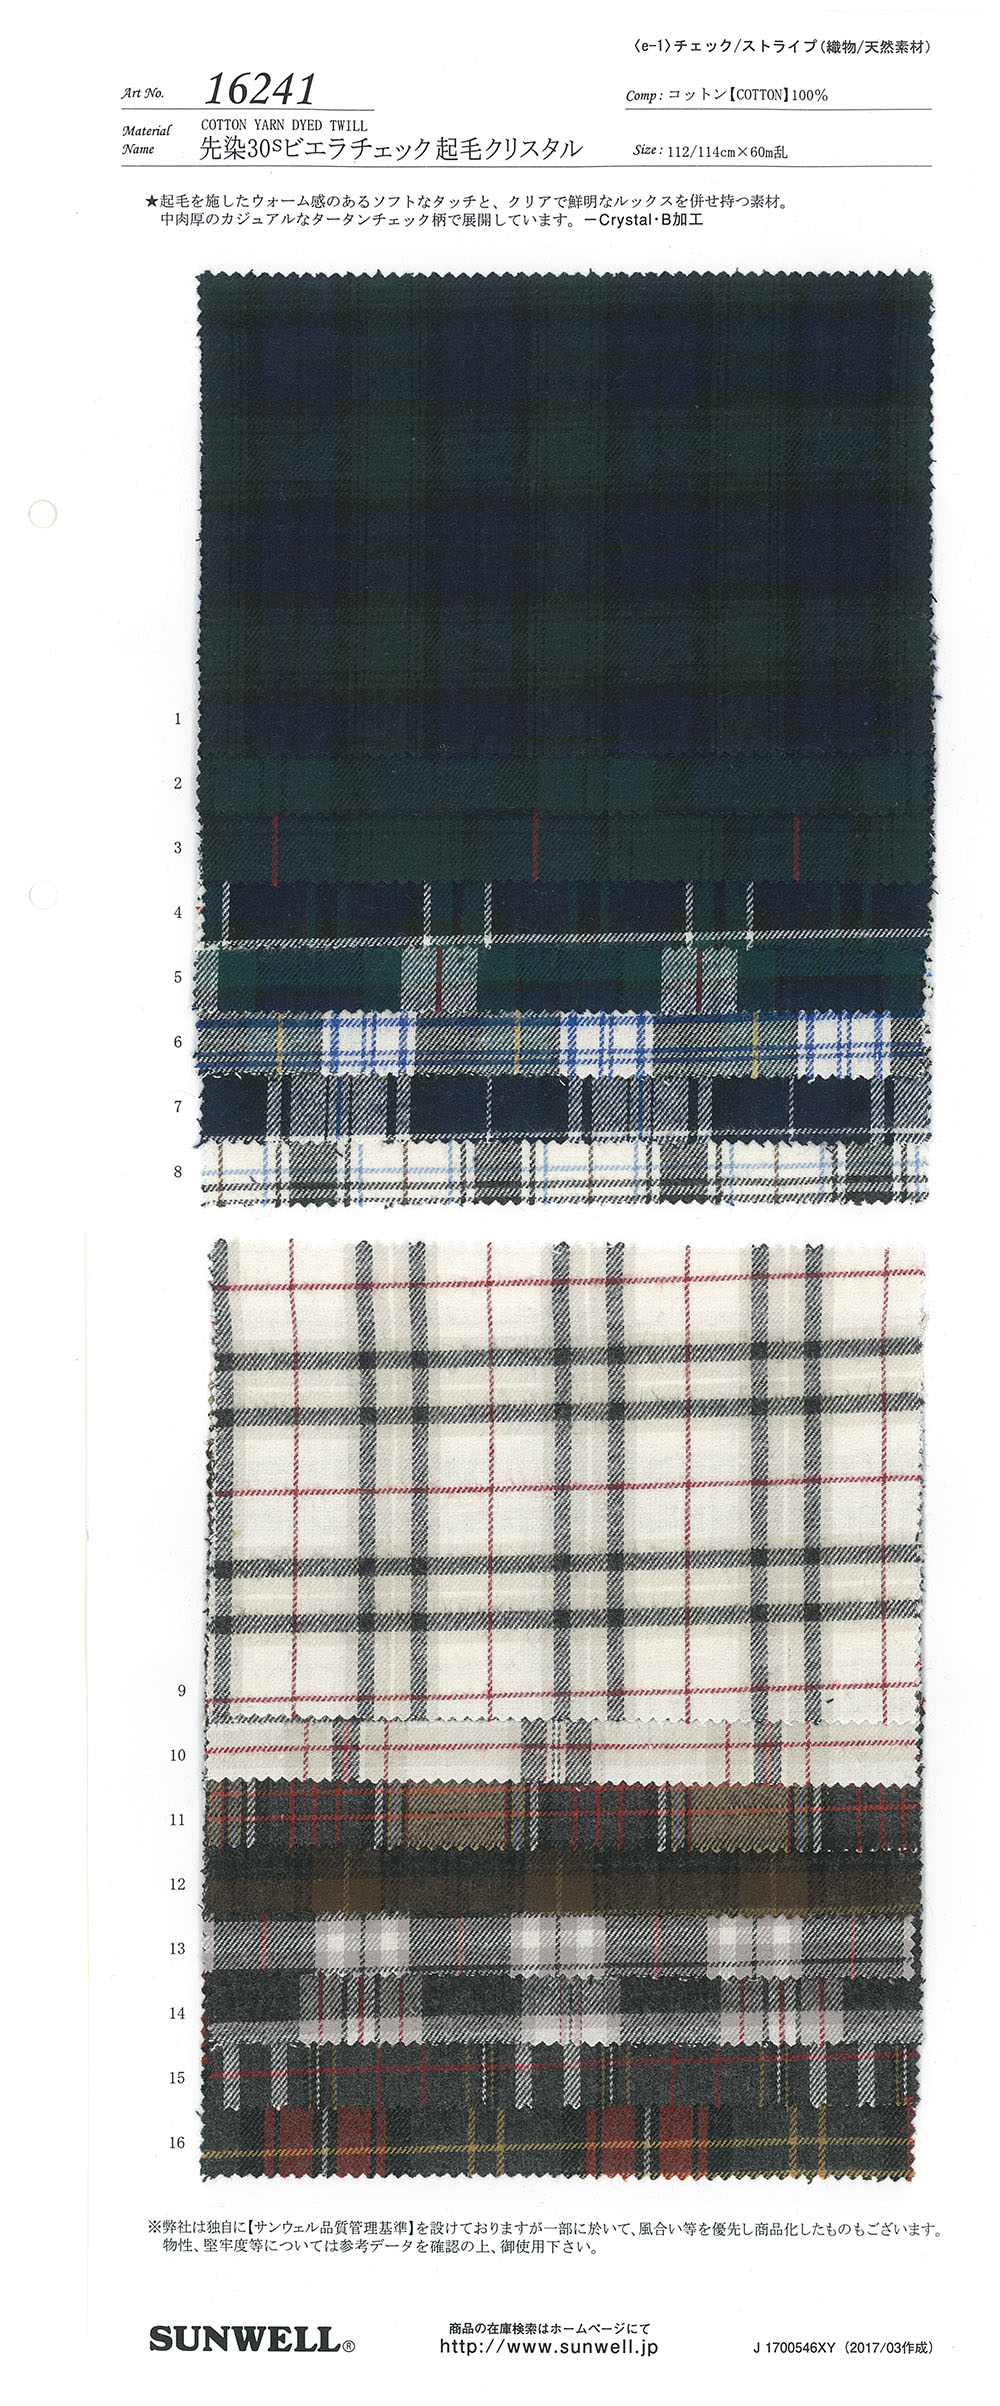 16241 色织30线维也拉法兰绒格纹起绒[面料] SUNWELL